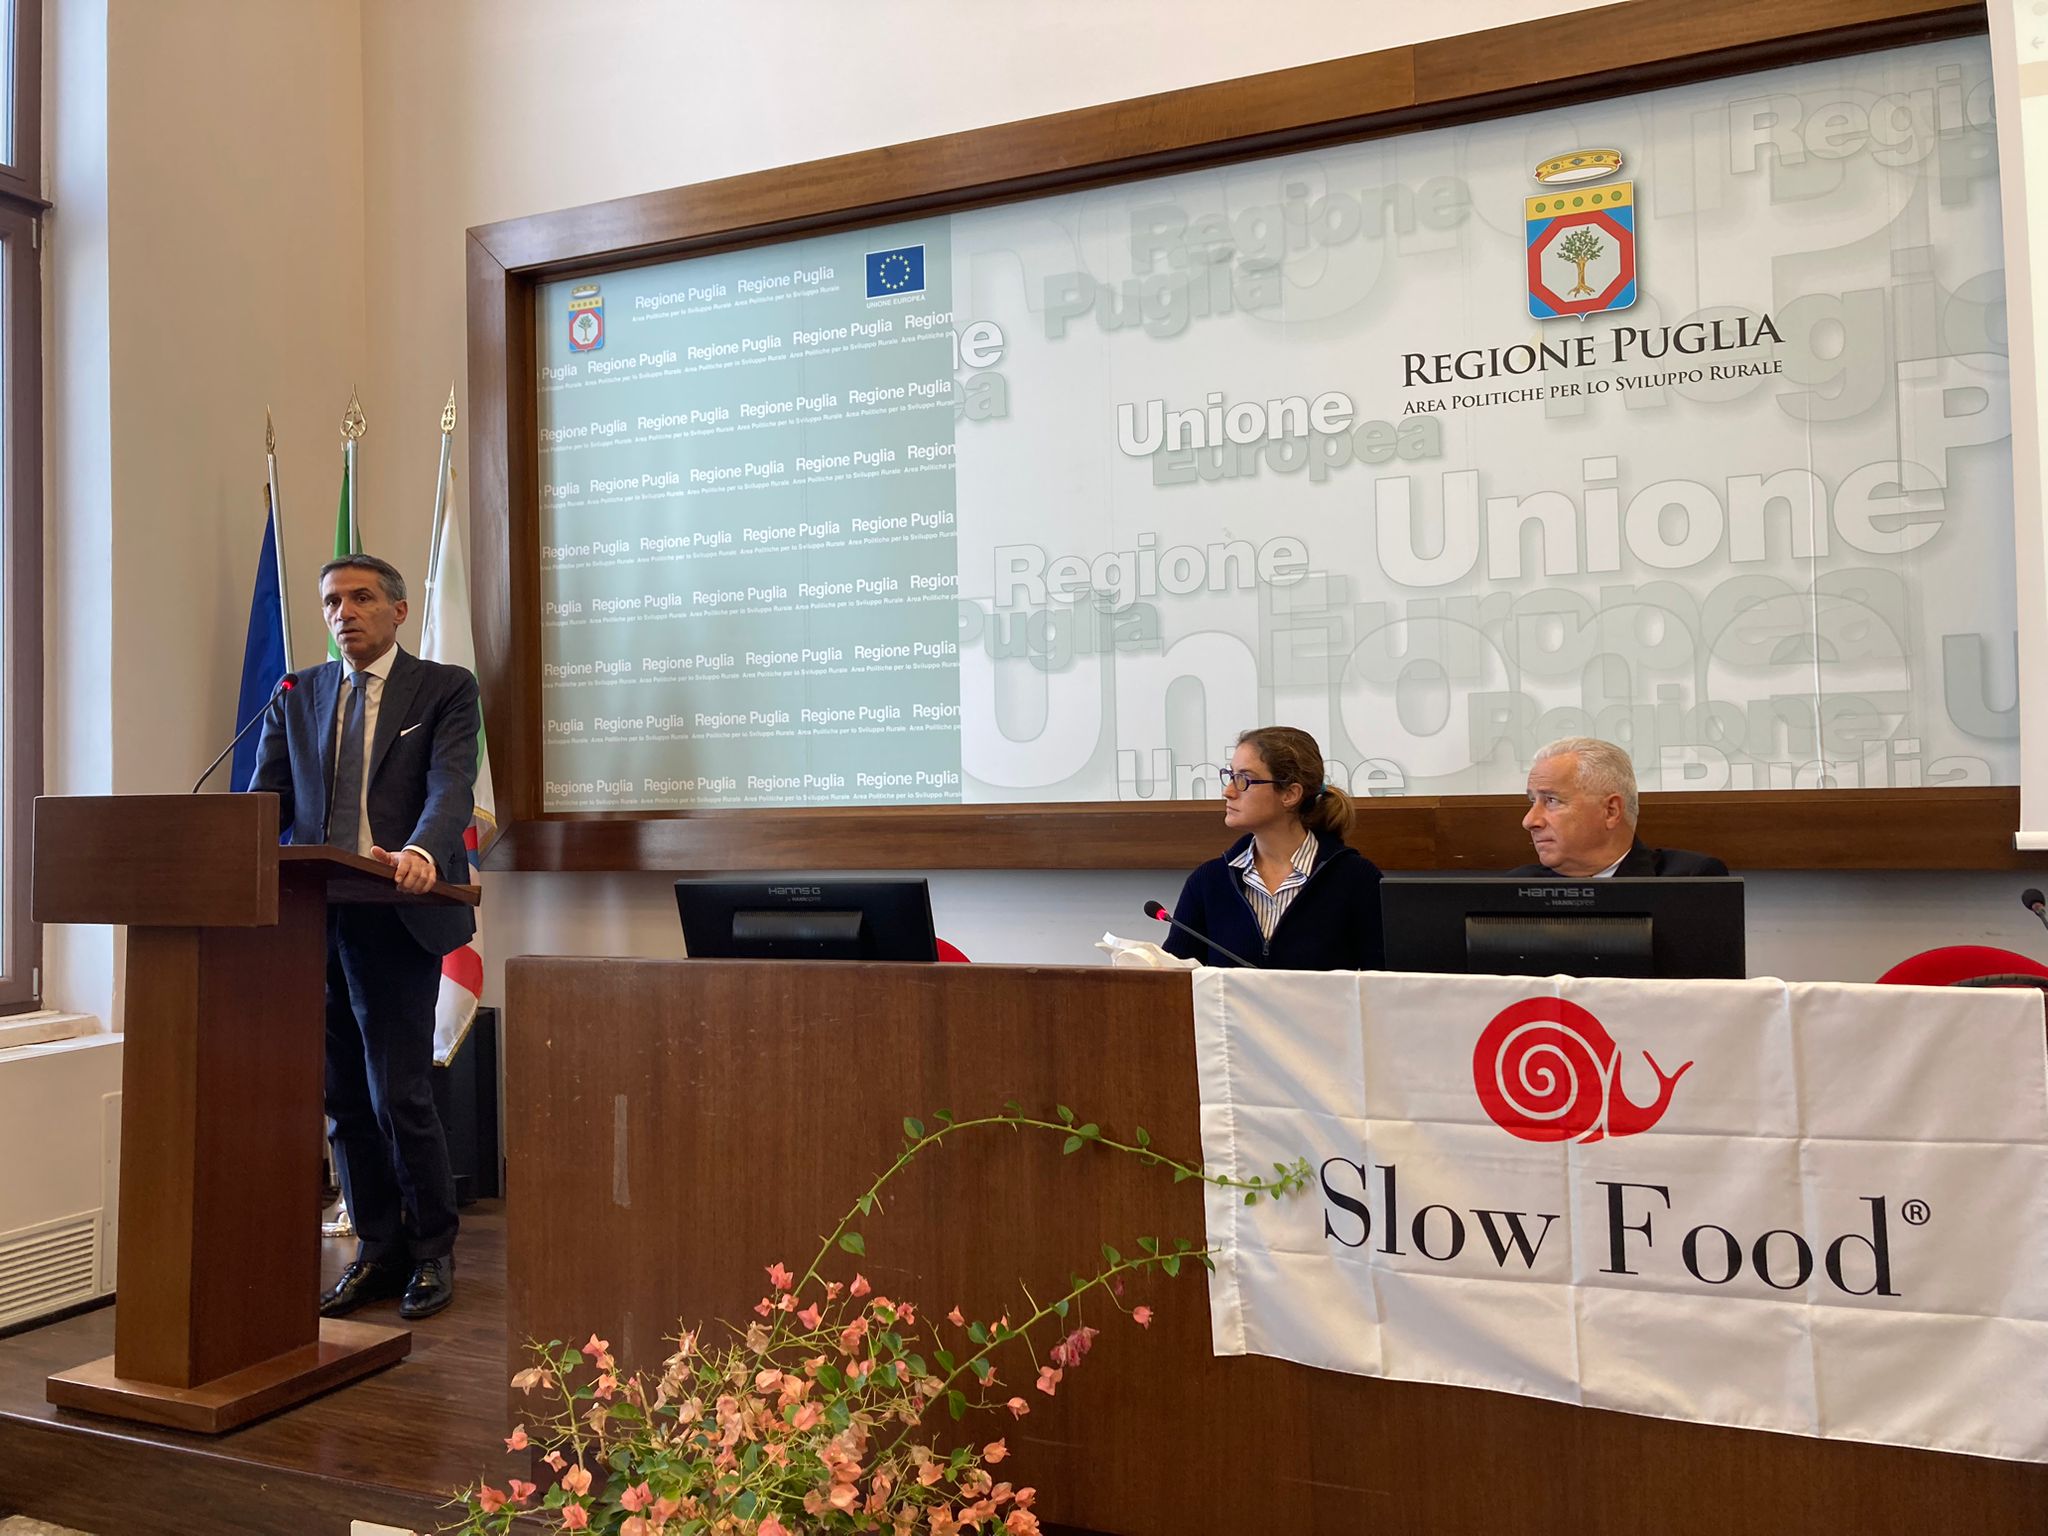 Galleria Tutela e valorizzazione delle eccellenze agroalimentari: Slow food e Regione insieme con il progetto “Presidiamo la Puglia” - Diapositiva 4 di 6